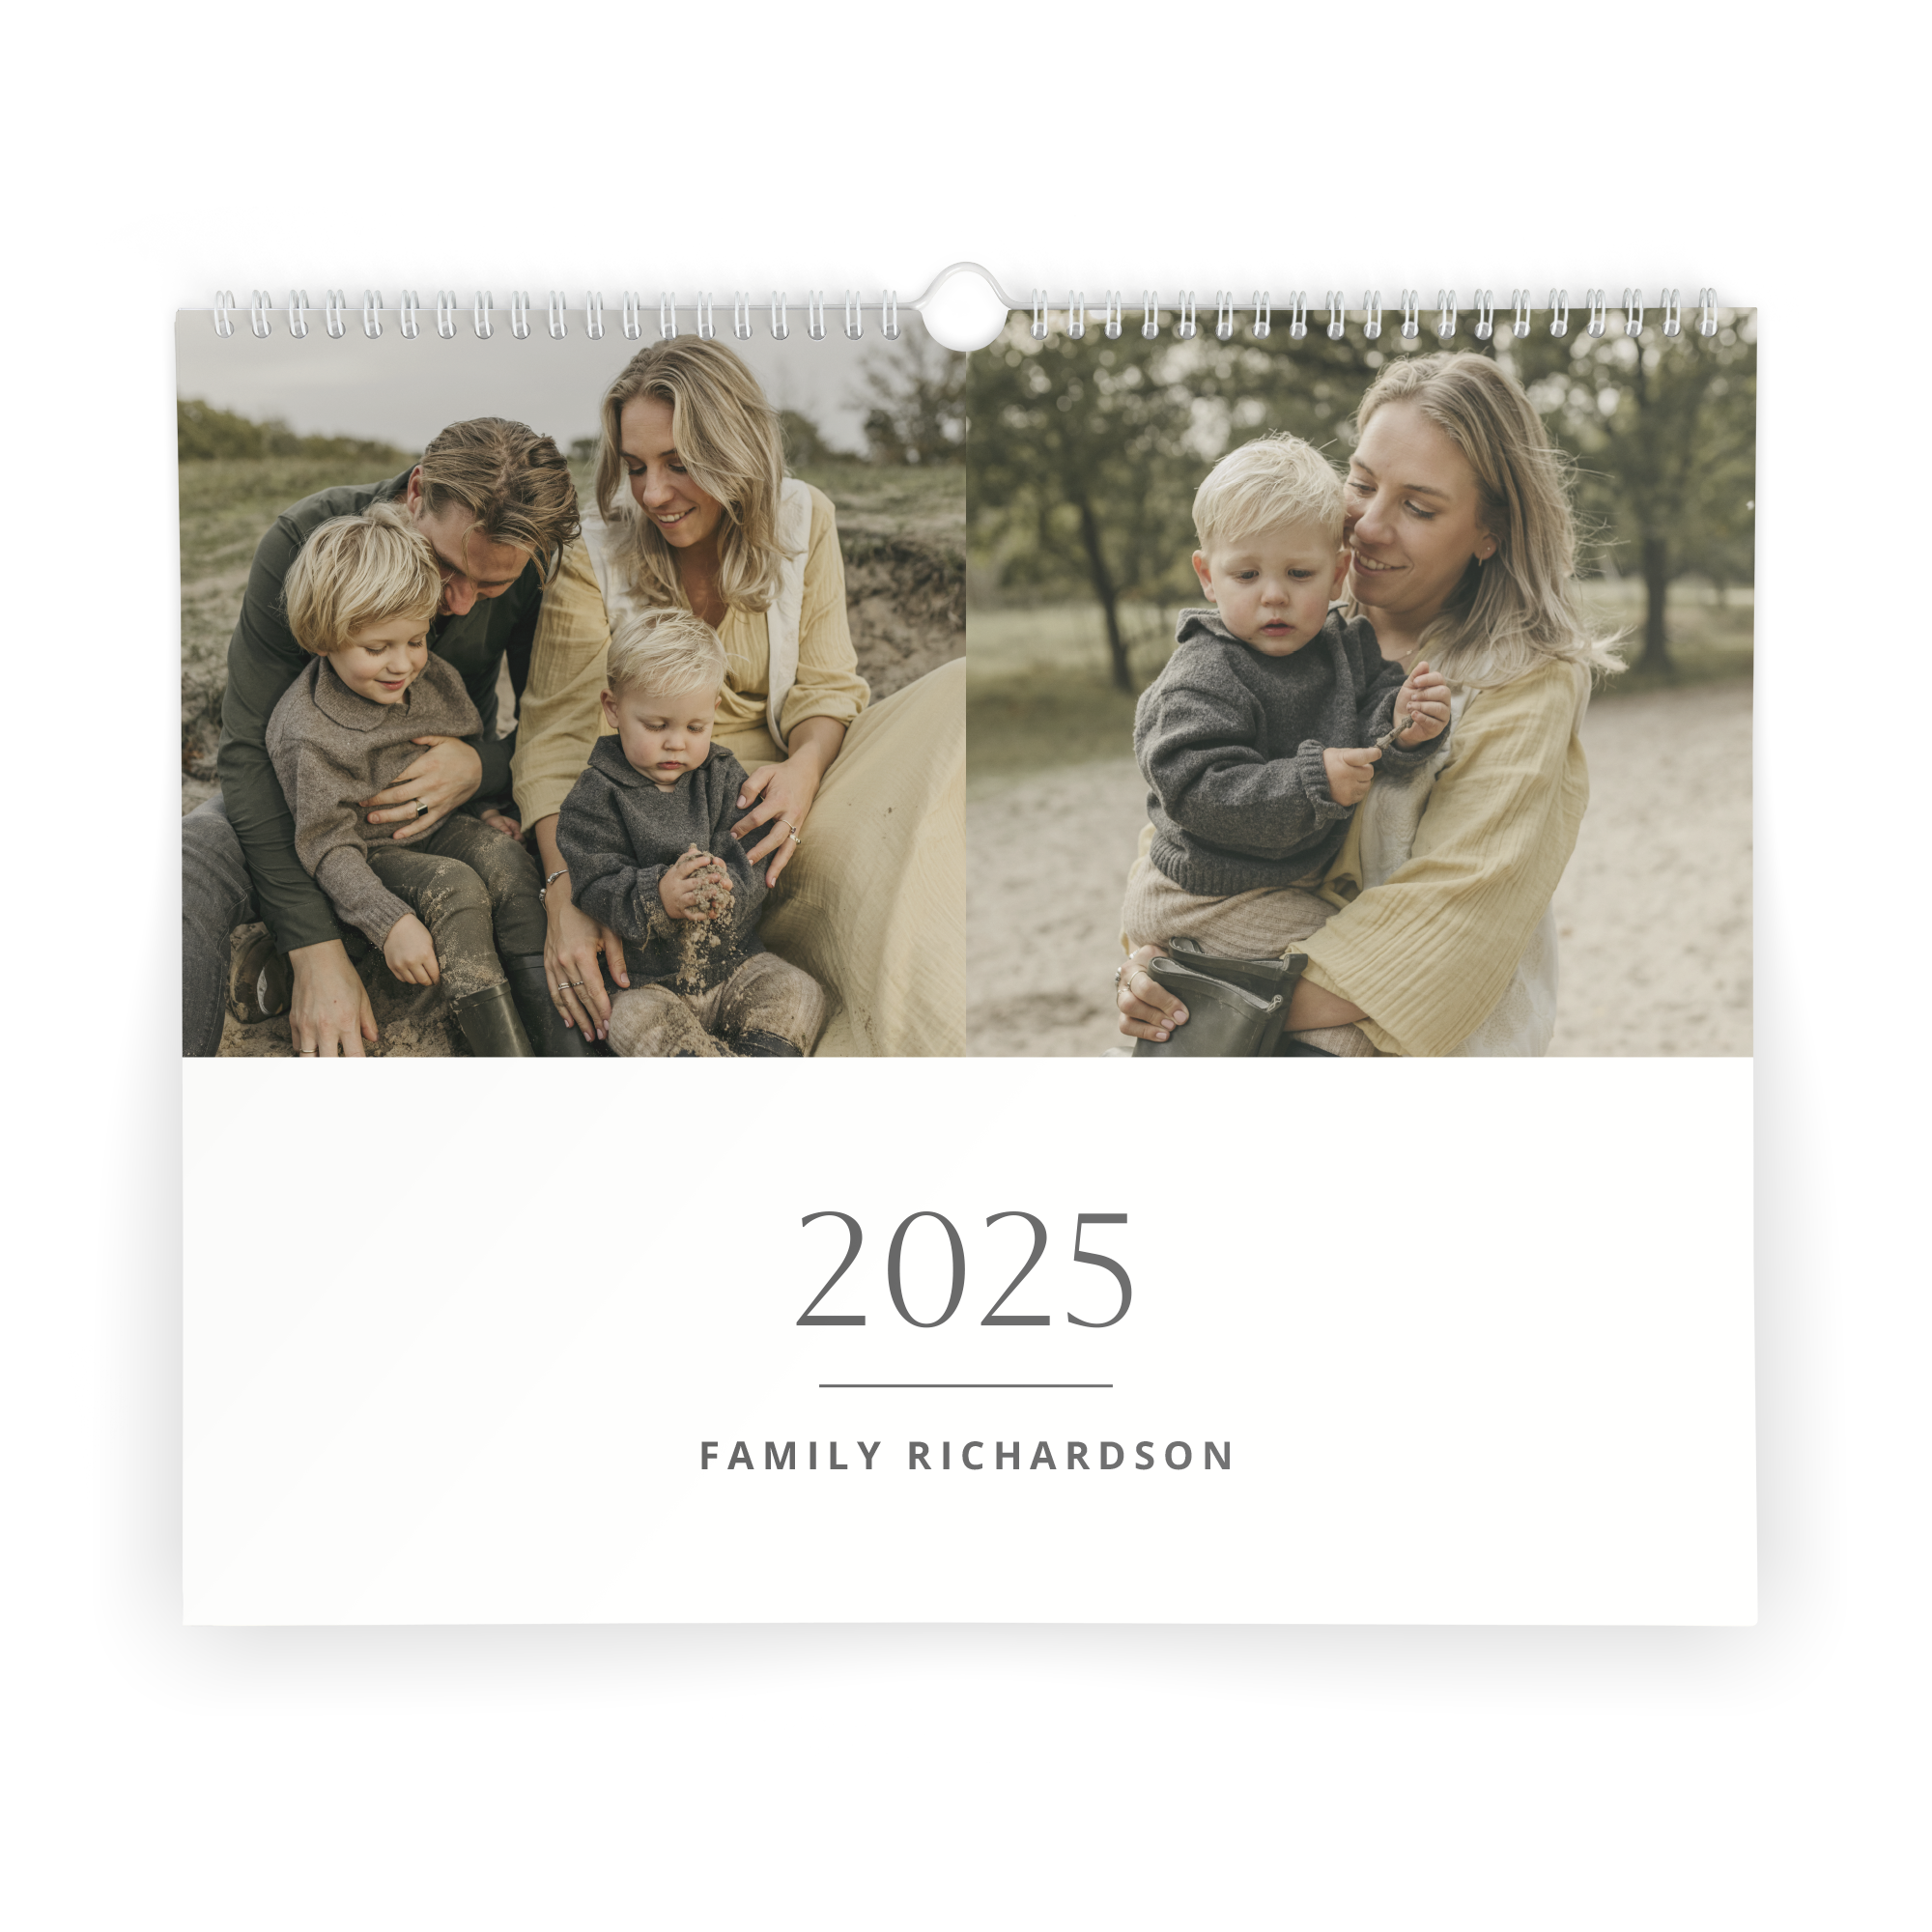 Printed Calendar for 2025 - Horizontal